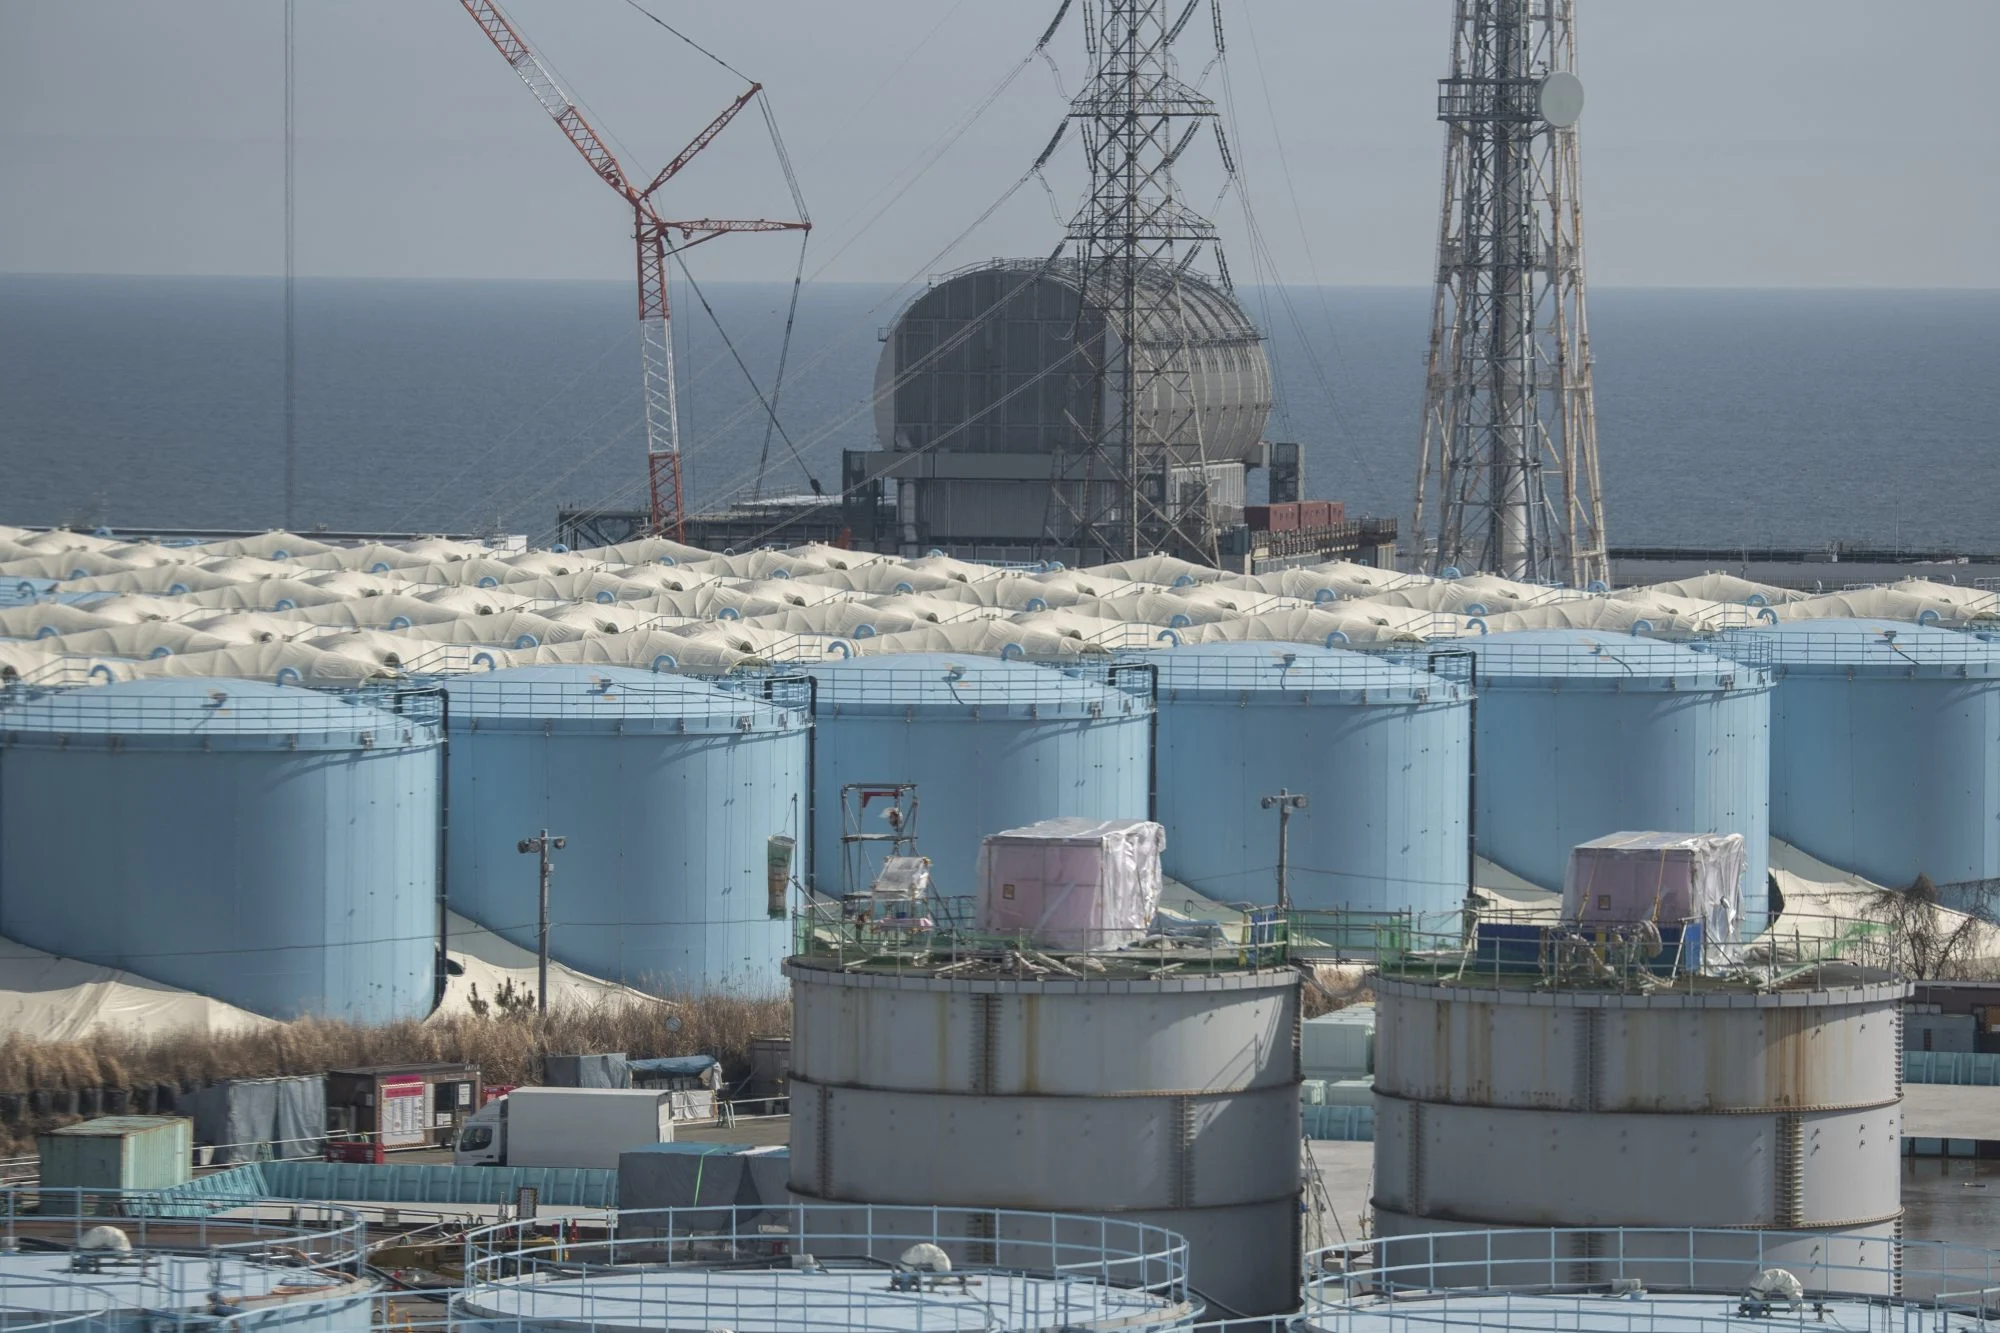 Tòa nhà lò phản ứng số 3 và các bể chứa nước nhiễm xạ tại nhà máy điện hạt nhân Daiichi ở Okuma, tỉnh Fukushima. - Ảnh: AFP